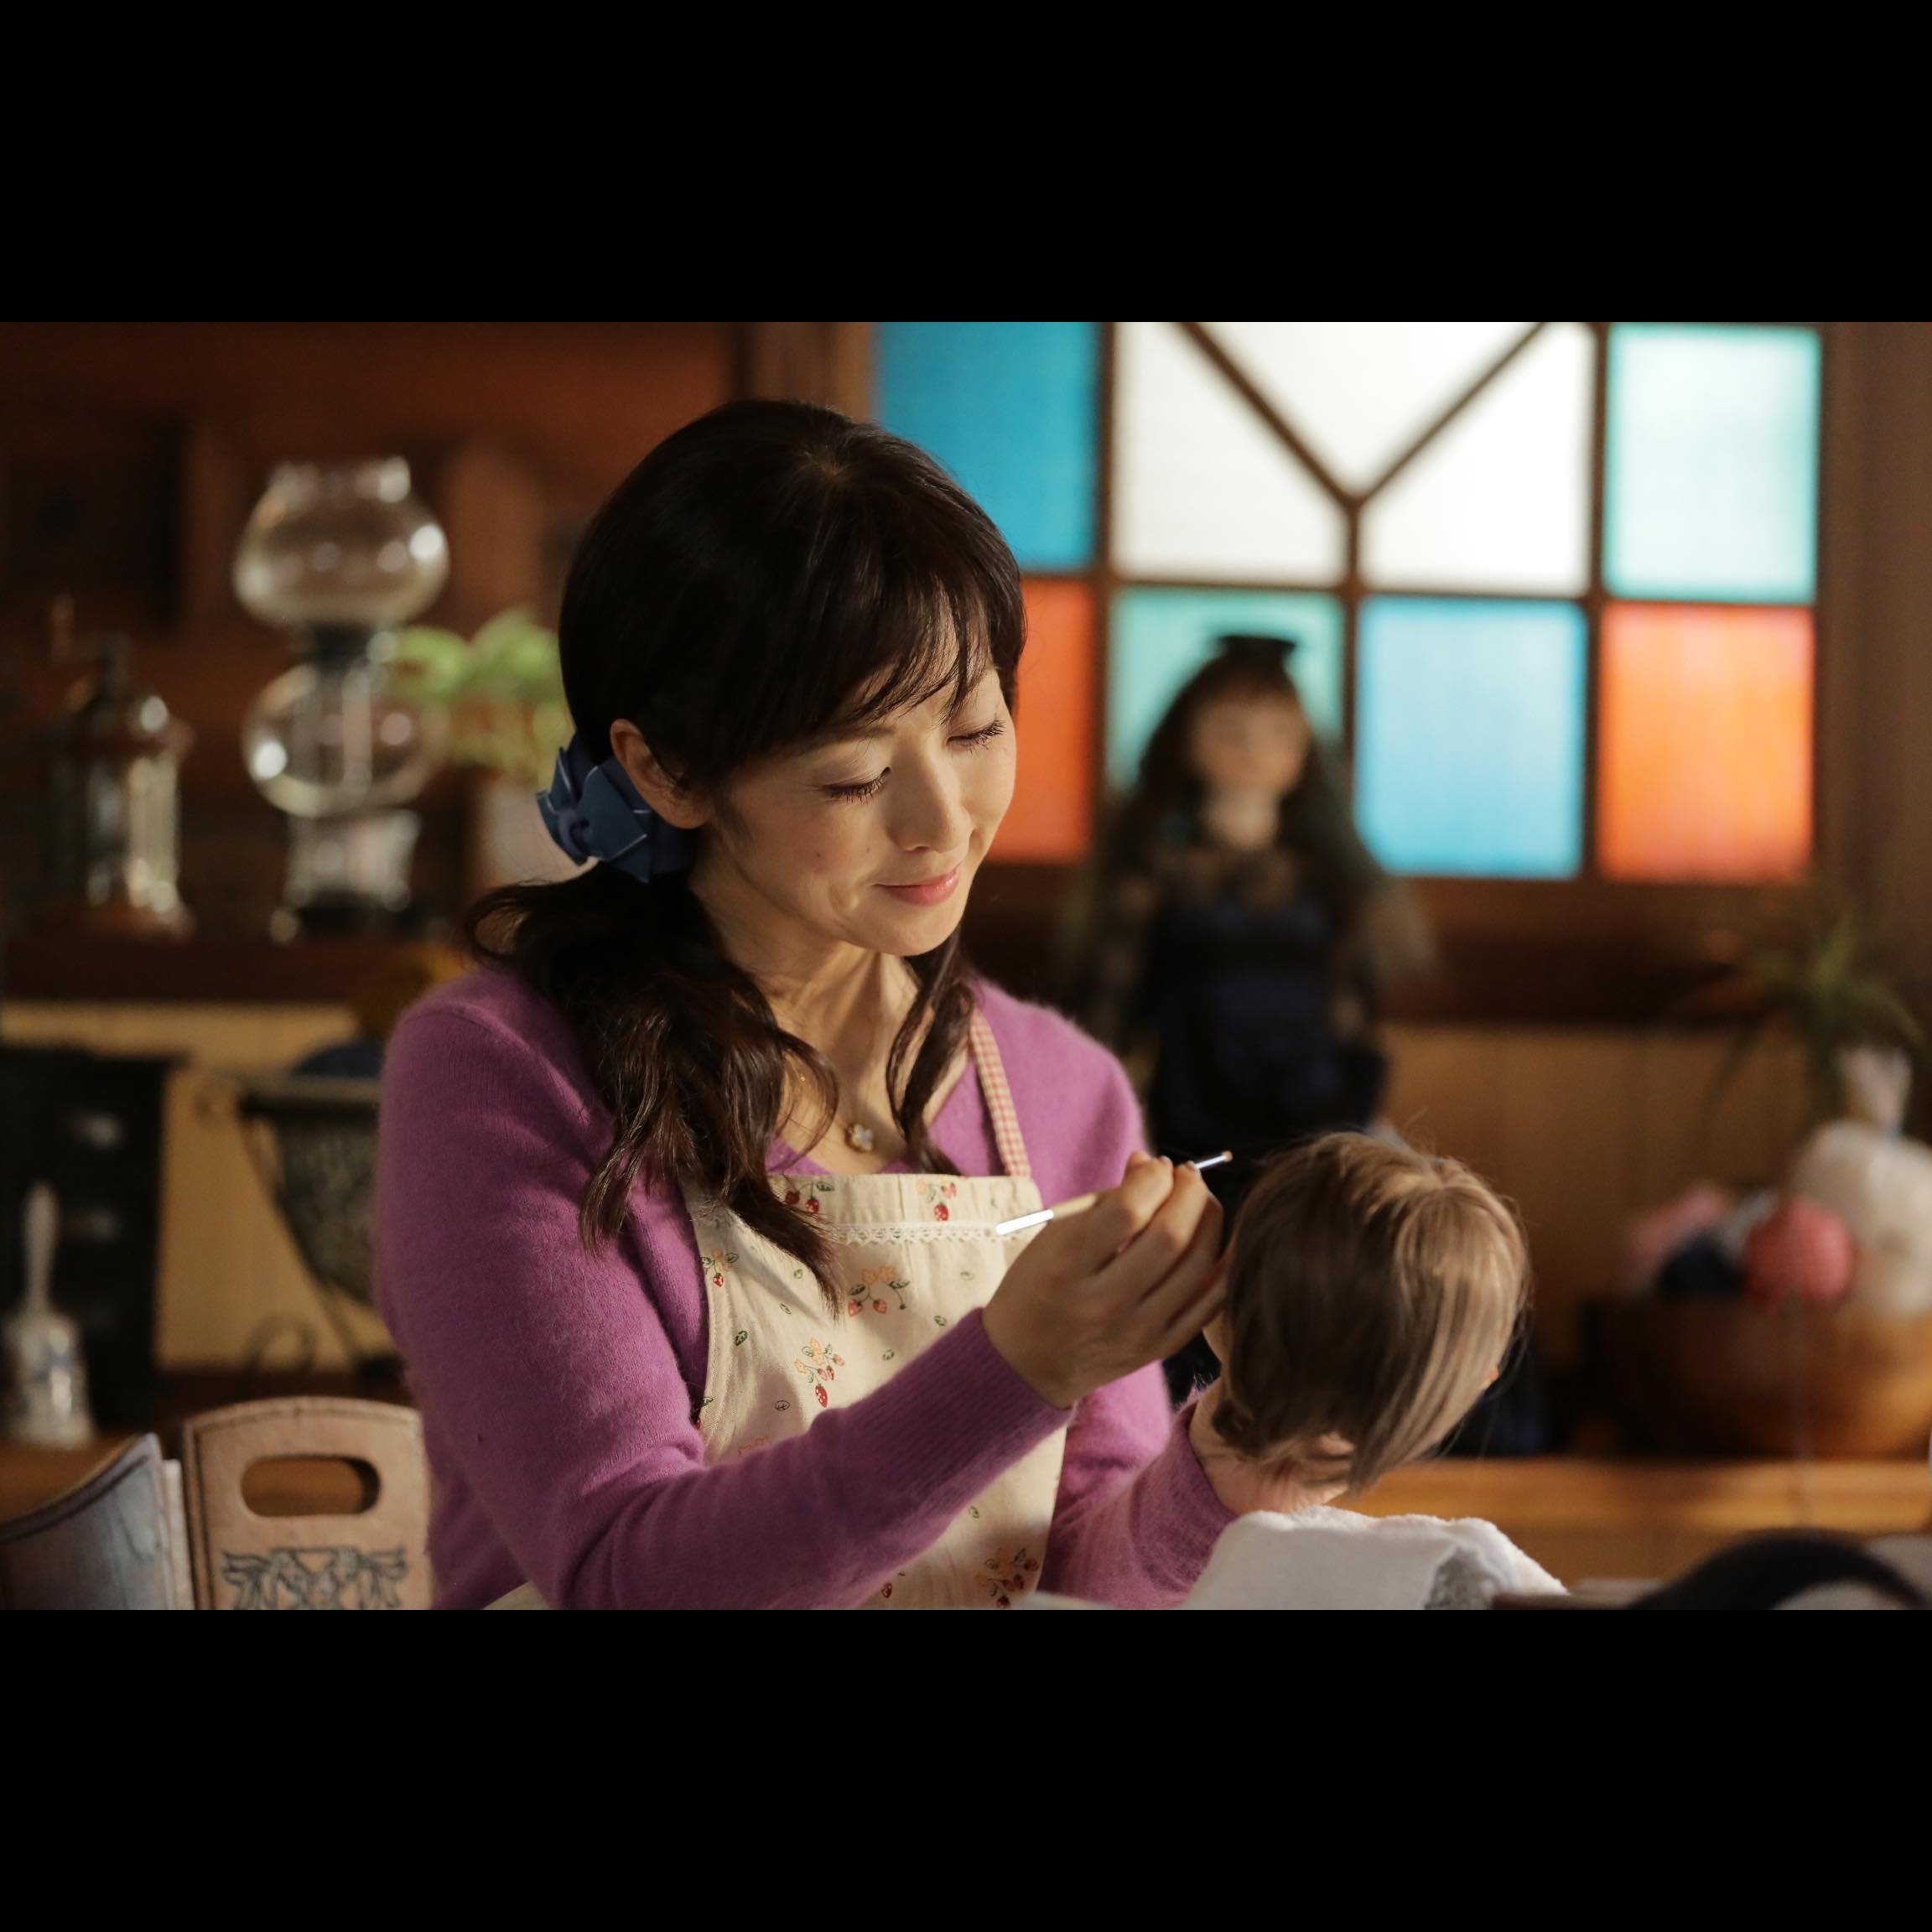 斉藤由貴の 毒親 ぶりが怖い 常軌を逸した お母さん 娘をやめていいですか の母親像 Real Sound リアルサウンド 映画部